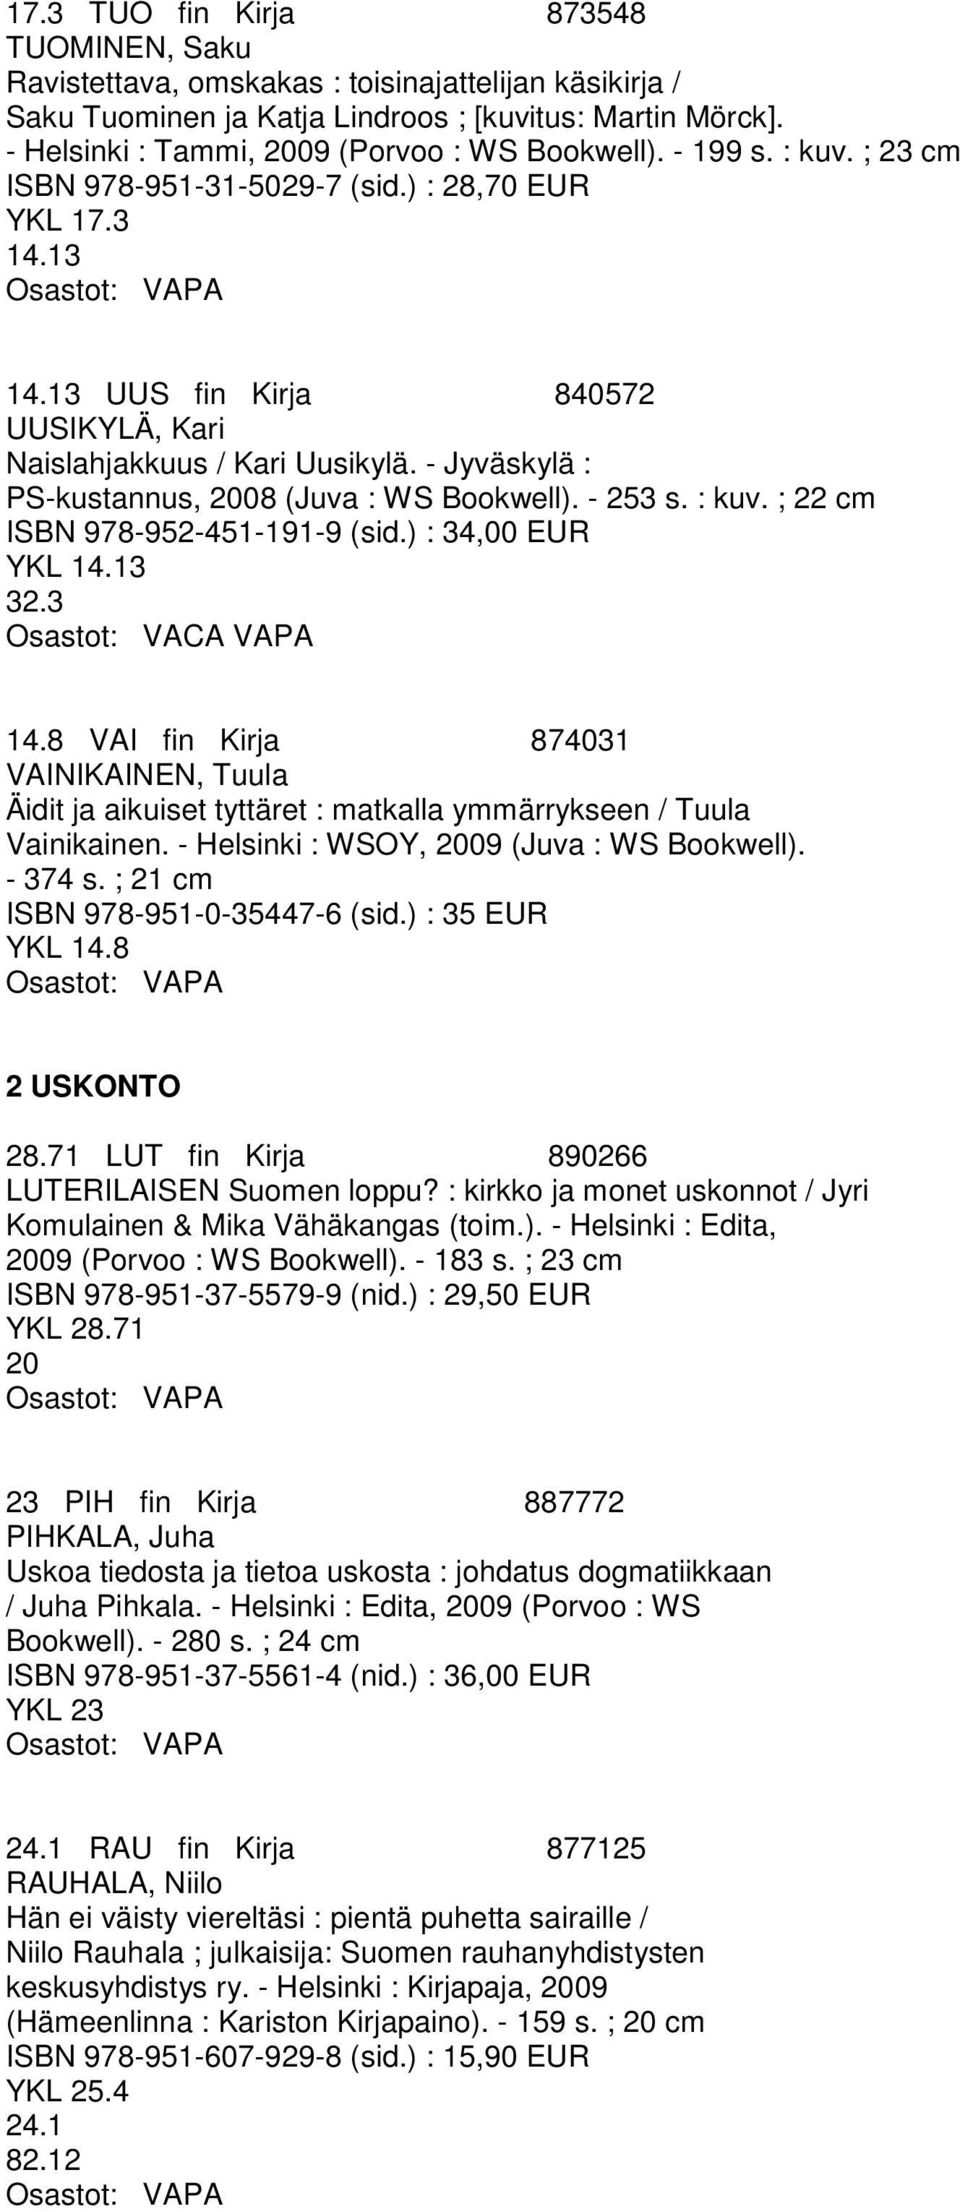 13 UUS fin Kirja 840572 UUSIKYLÄ, Kari Naislahjakkuus / Kari Uusikylä. - Jyväskylä : PS-kustannus, 2008 (Juva : WS Bookwell). - 253 s. : kuv. ; 22 cm ISBN 978-952-451-191-9 (sid.) : 34,00 EUR YKL 14.